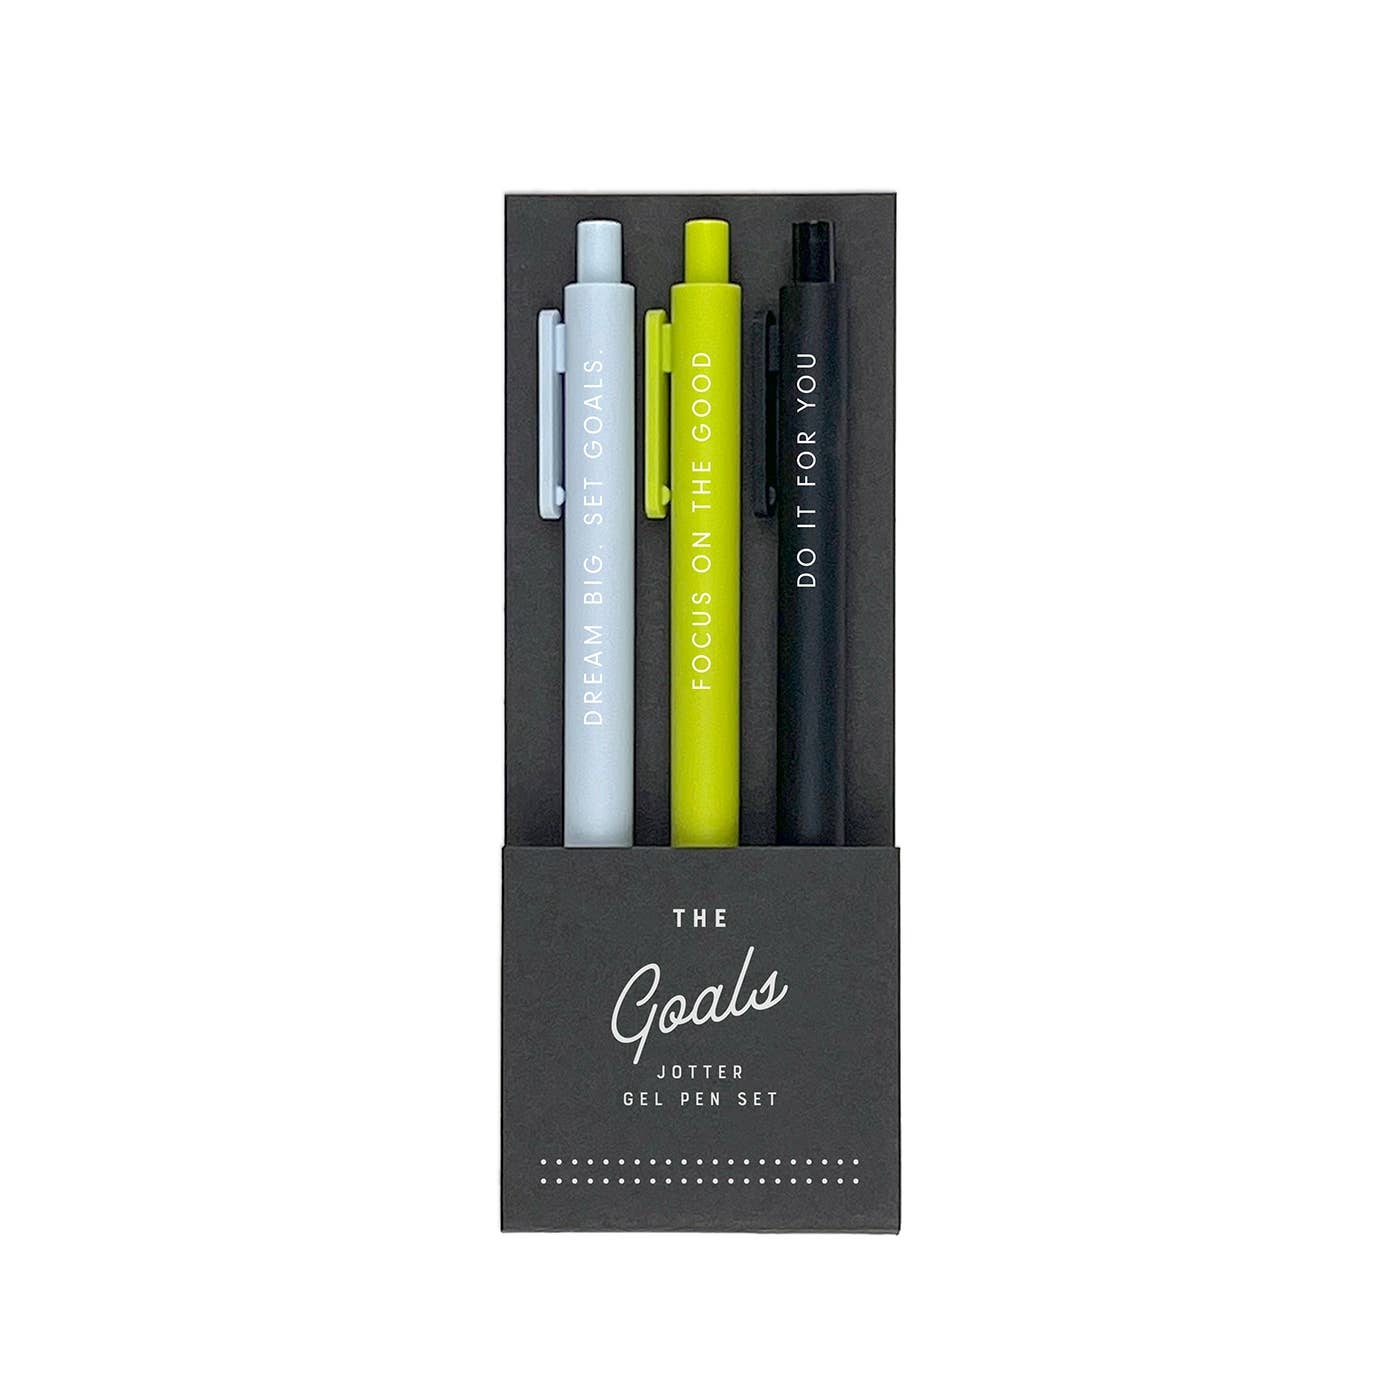 Ruff House Print Shop Pen The Goals Jotter Gel Pen Set | Ruff House Print Shop